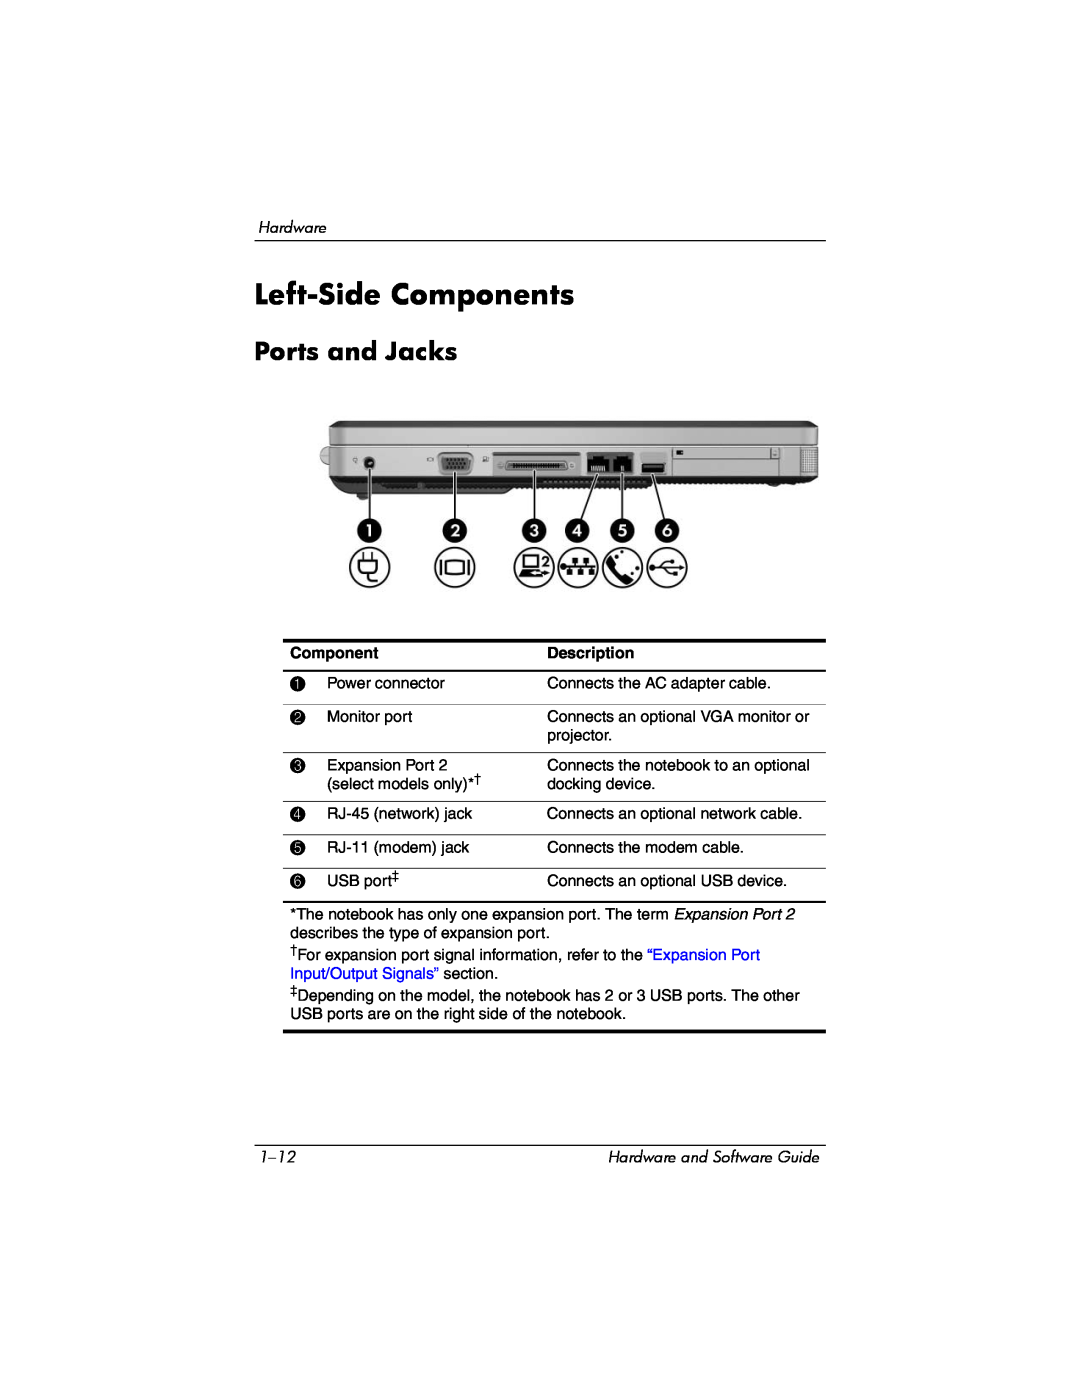 Compaq Presario M2000 manual Left-Side Components, Ports and Jacks, Description 